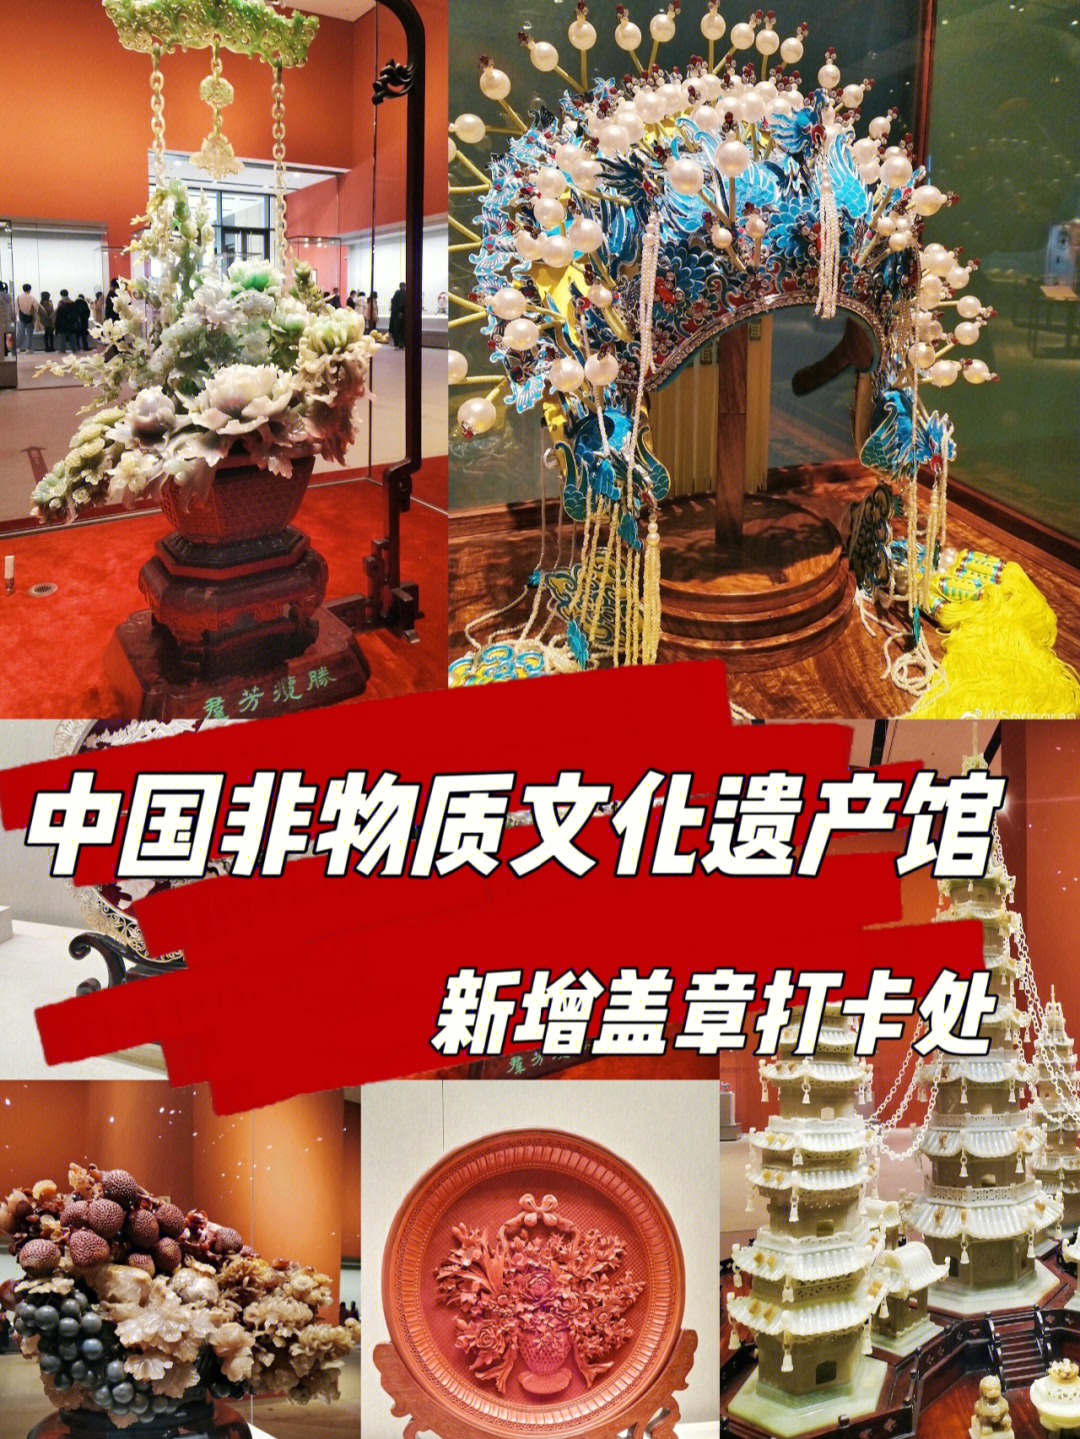 中国非遗博物馆地址图片